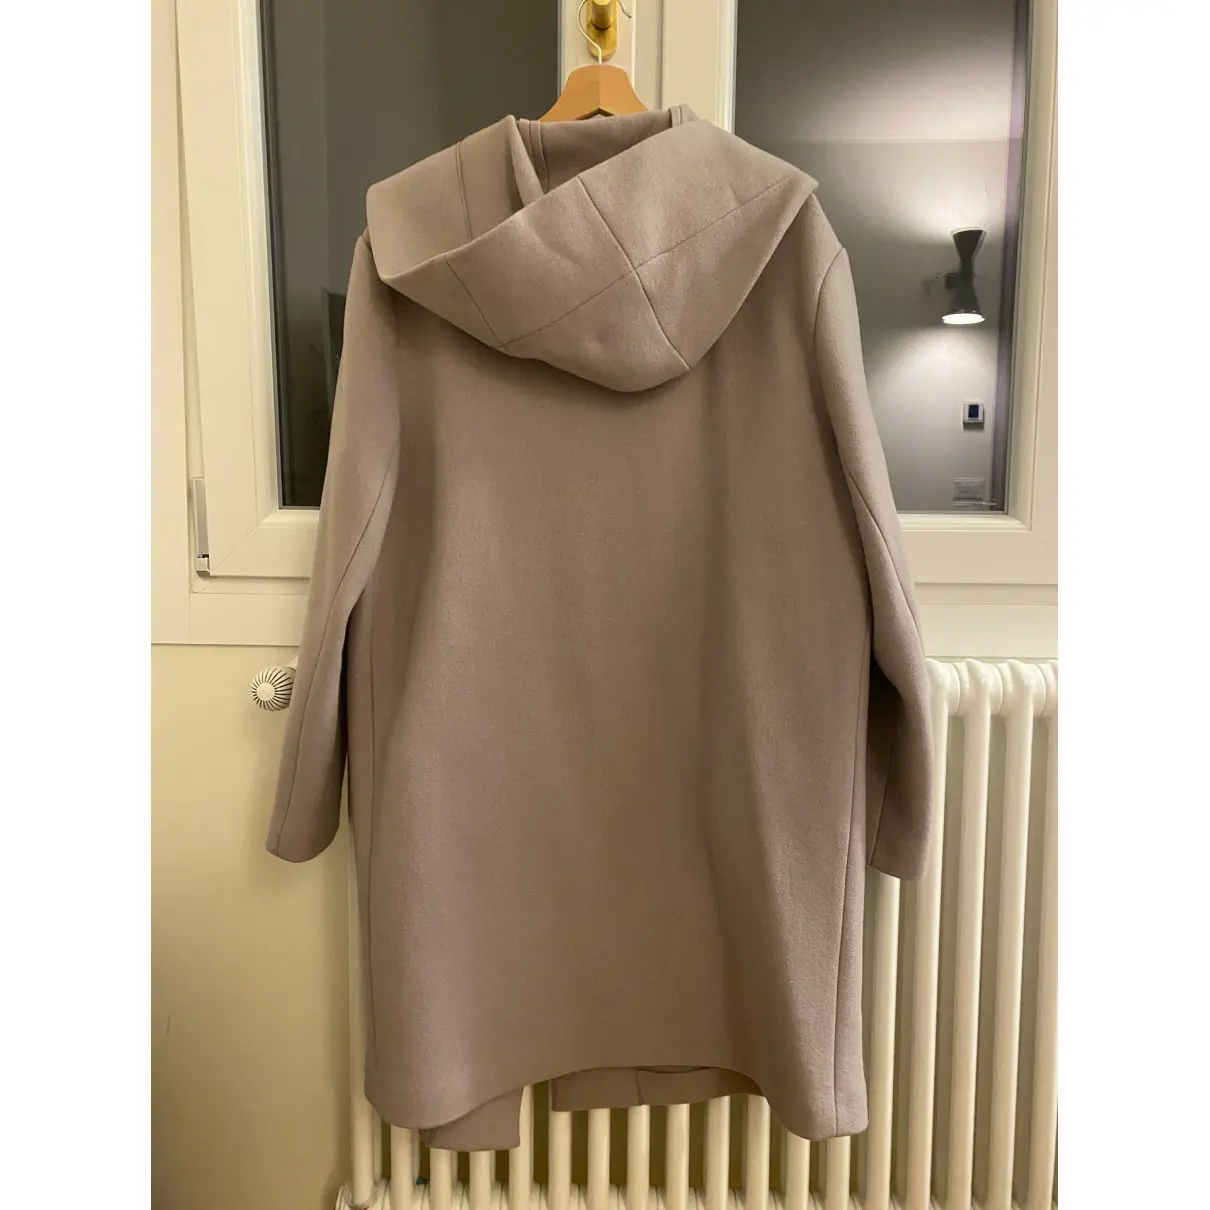 Buy Niu Wool coat online